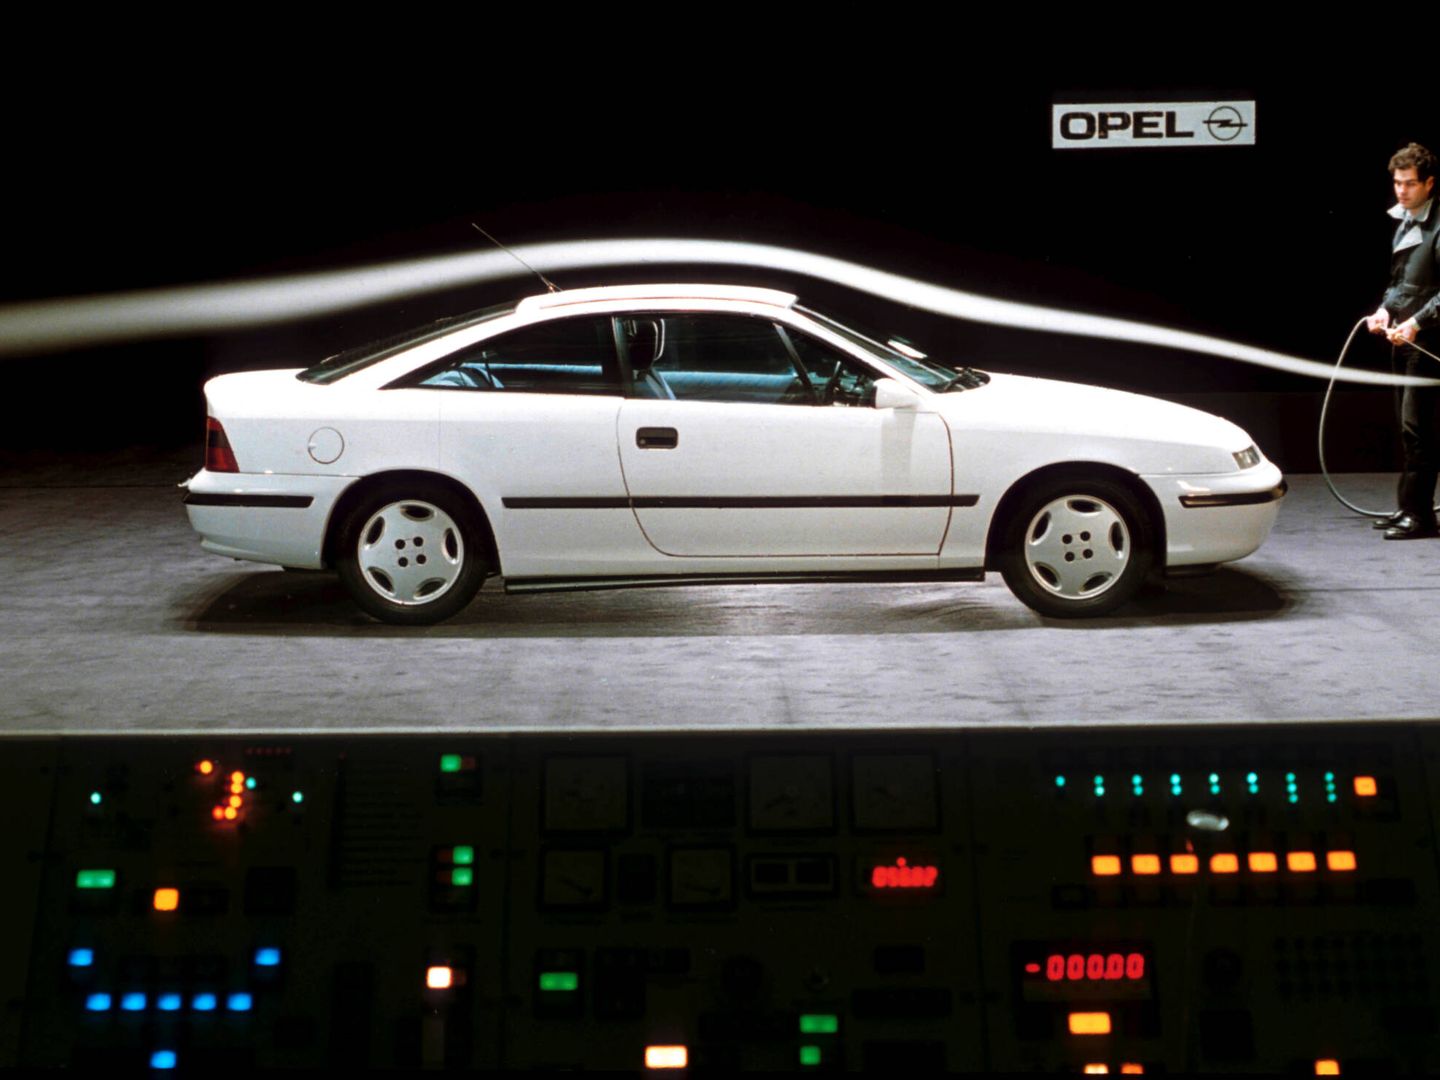 En 1989, el Opel Calibra batió el récord de aerodinámica con su índice de penetración Cx de 0,26.